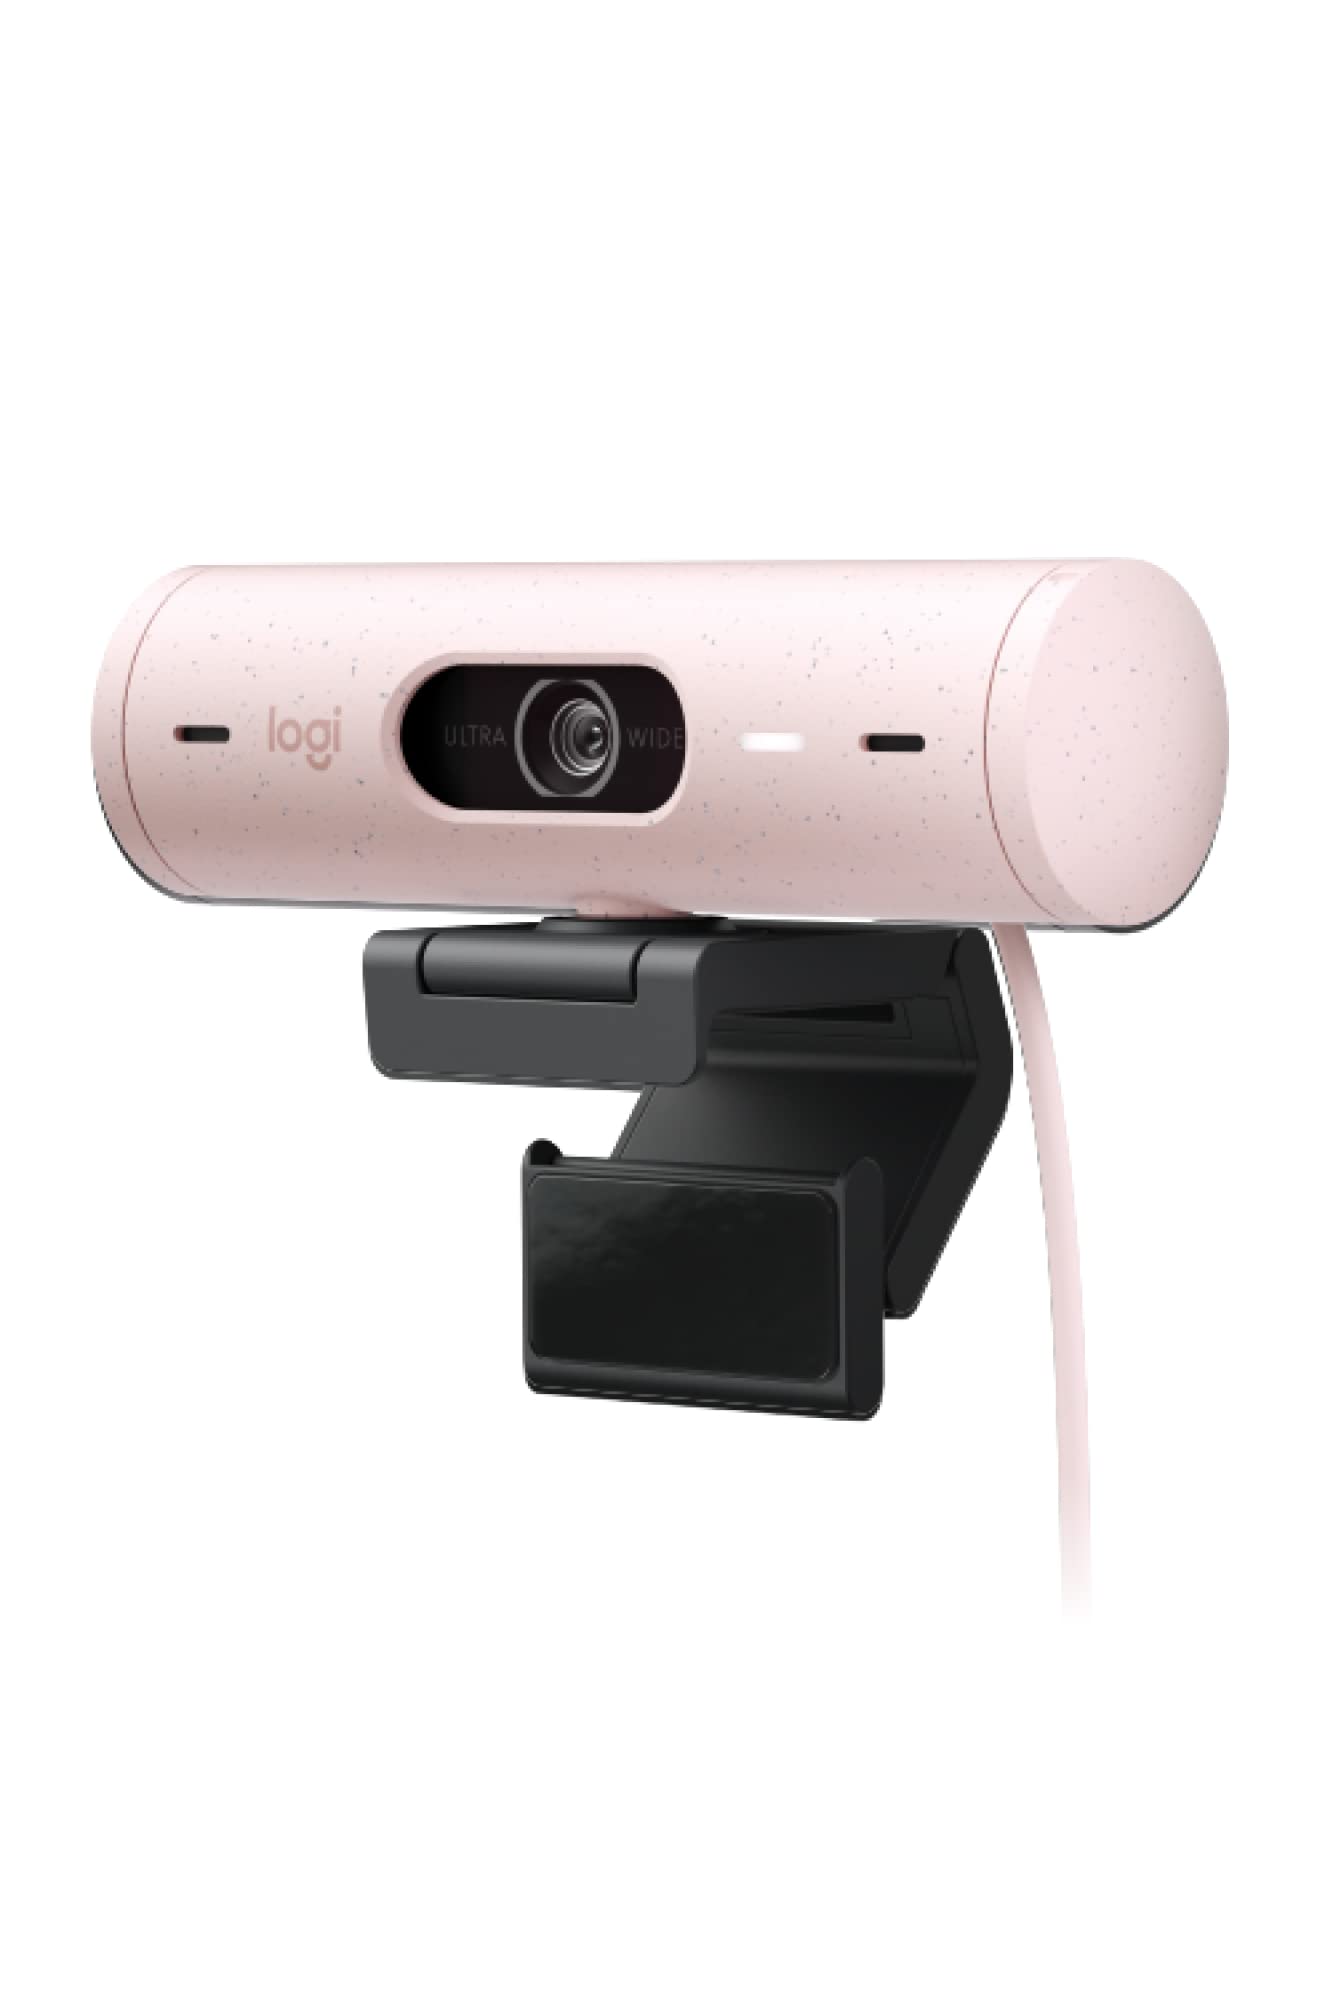 ロジクール Webカメラ フルHD 1080P オートフォーカス 自動光補正 ノイズリダクション マイク 広視野角 90度 プライバシーシャッター Brio 500 C940RO ローズ ウェブカメラ ウェブカム PC Mac ノートパソコン Zoom Skype 国内正規品 1年間メーカー保証